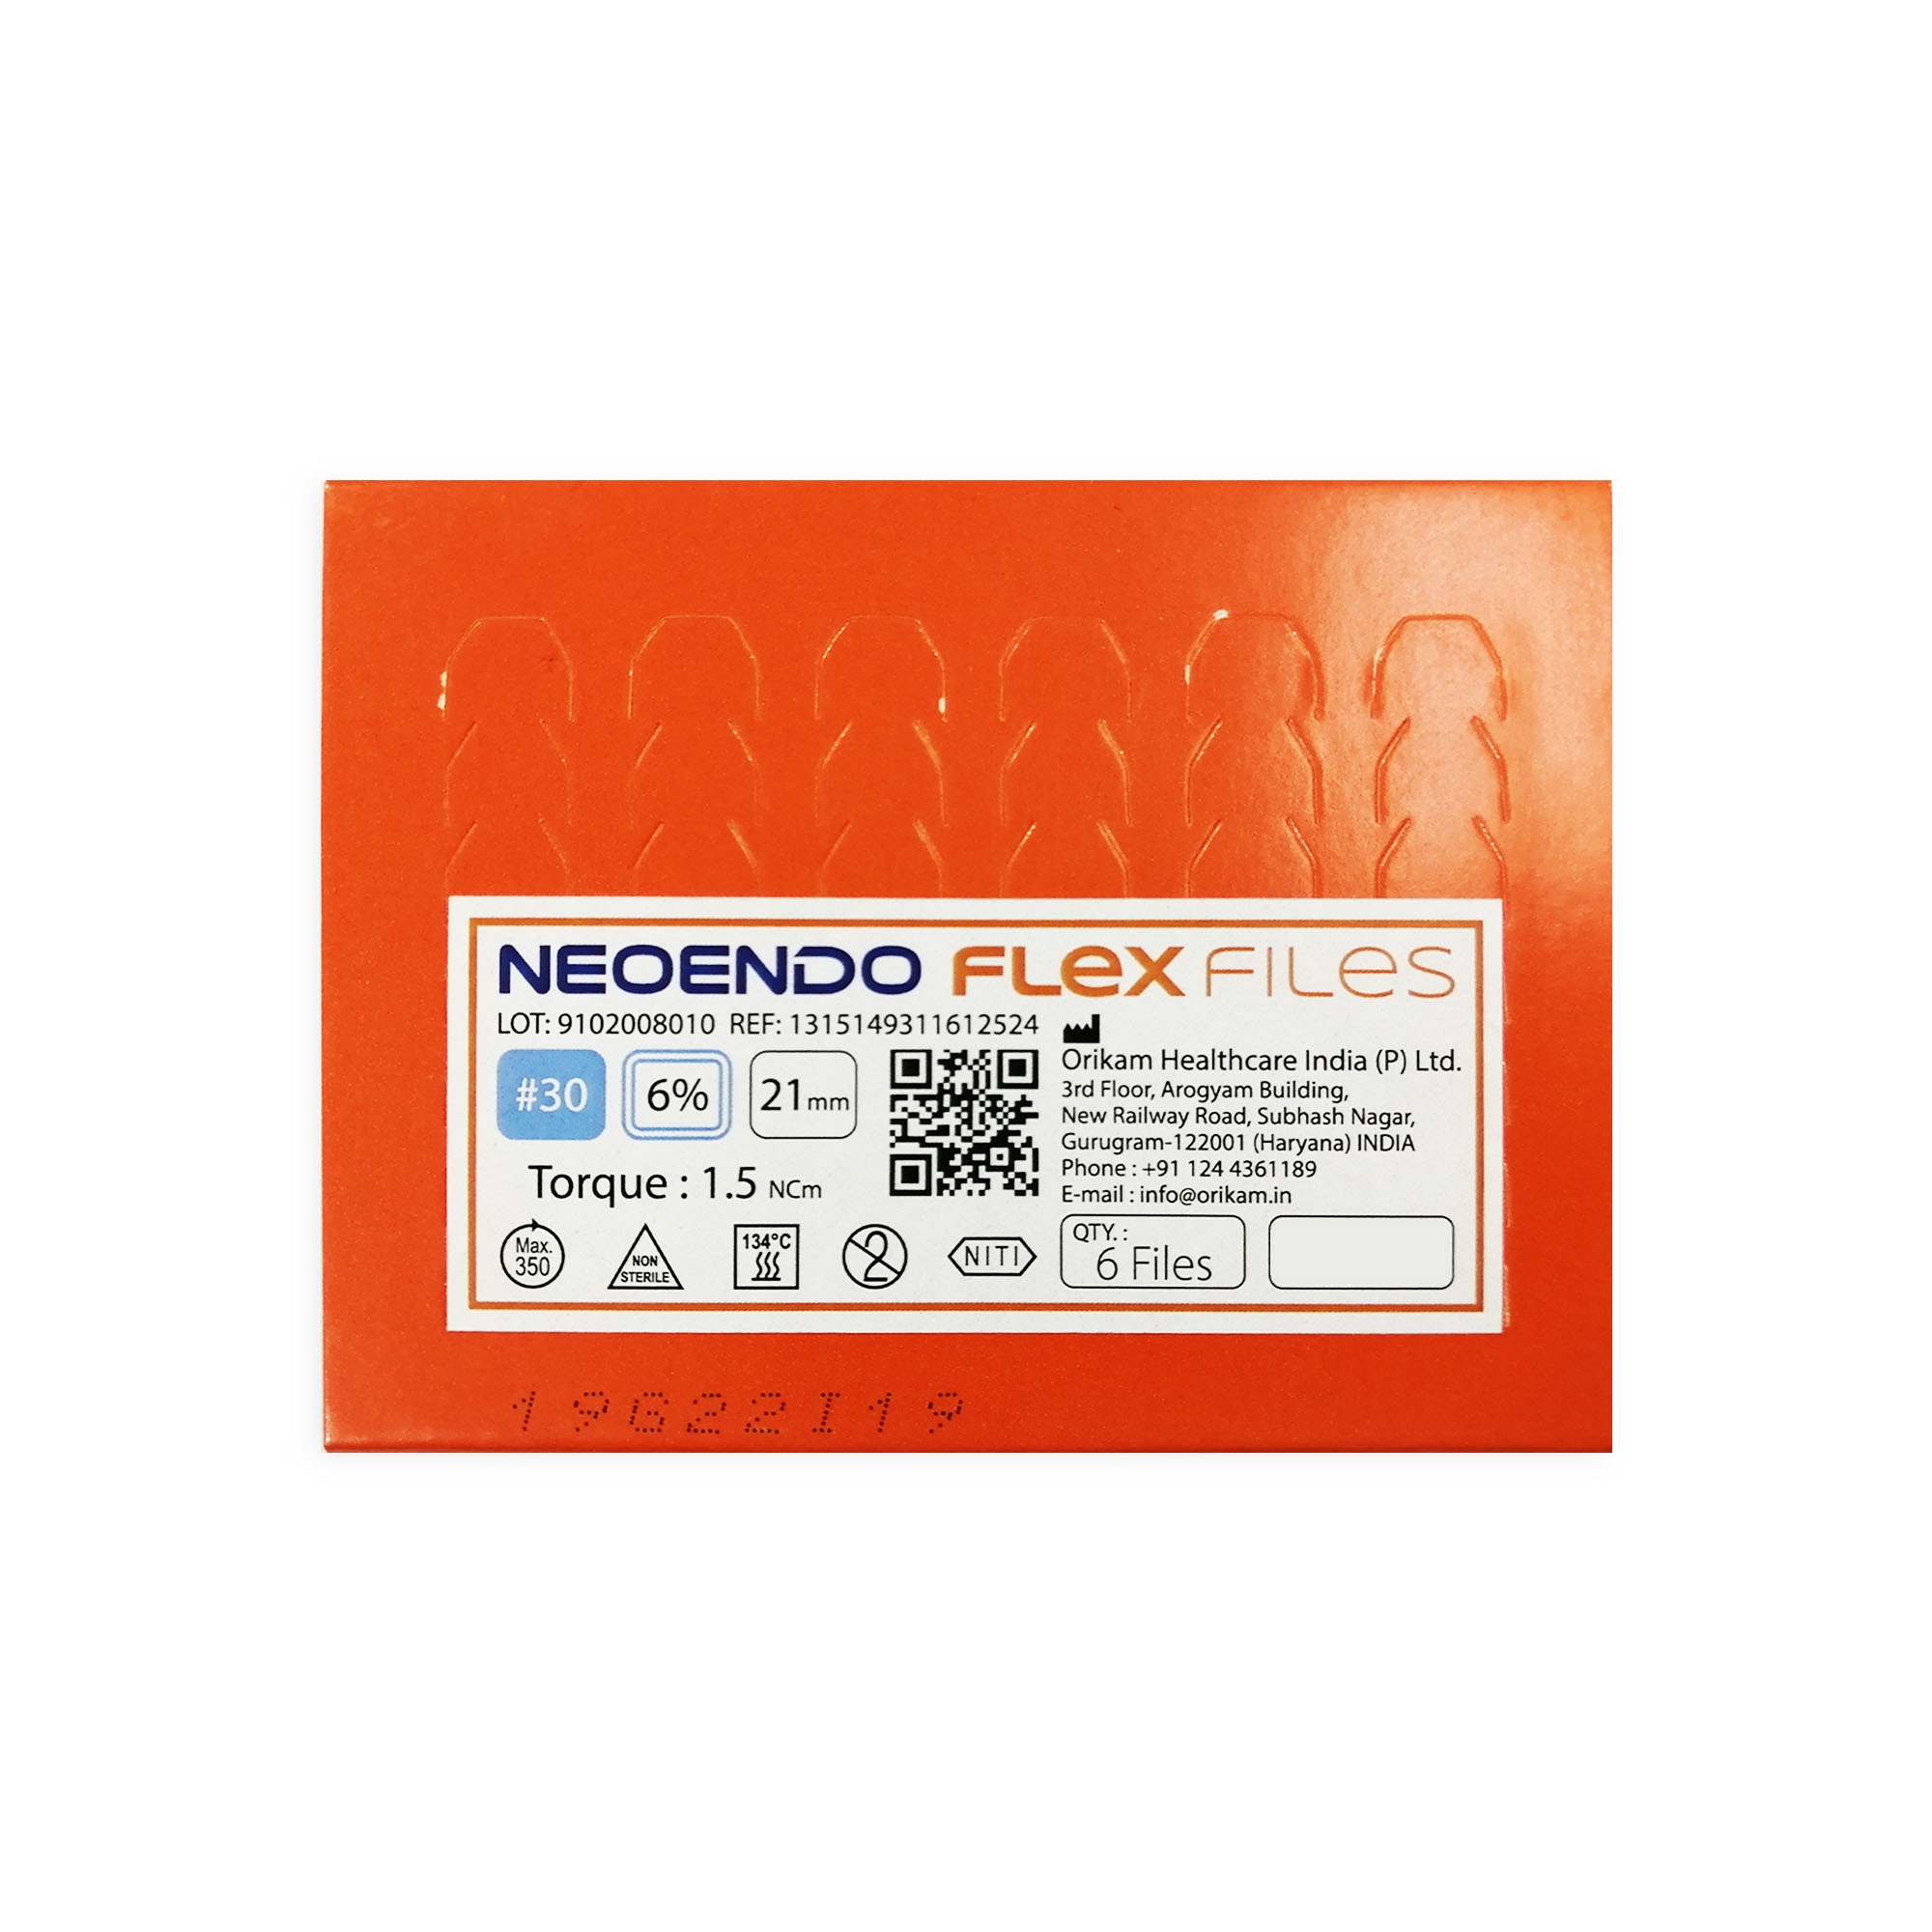 NeoEndo Flex Files 25mm Assorted Endo Rotary Files